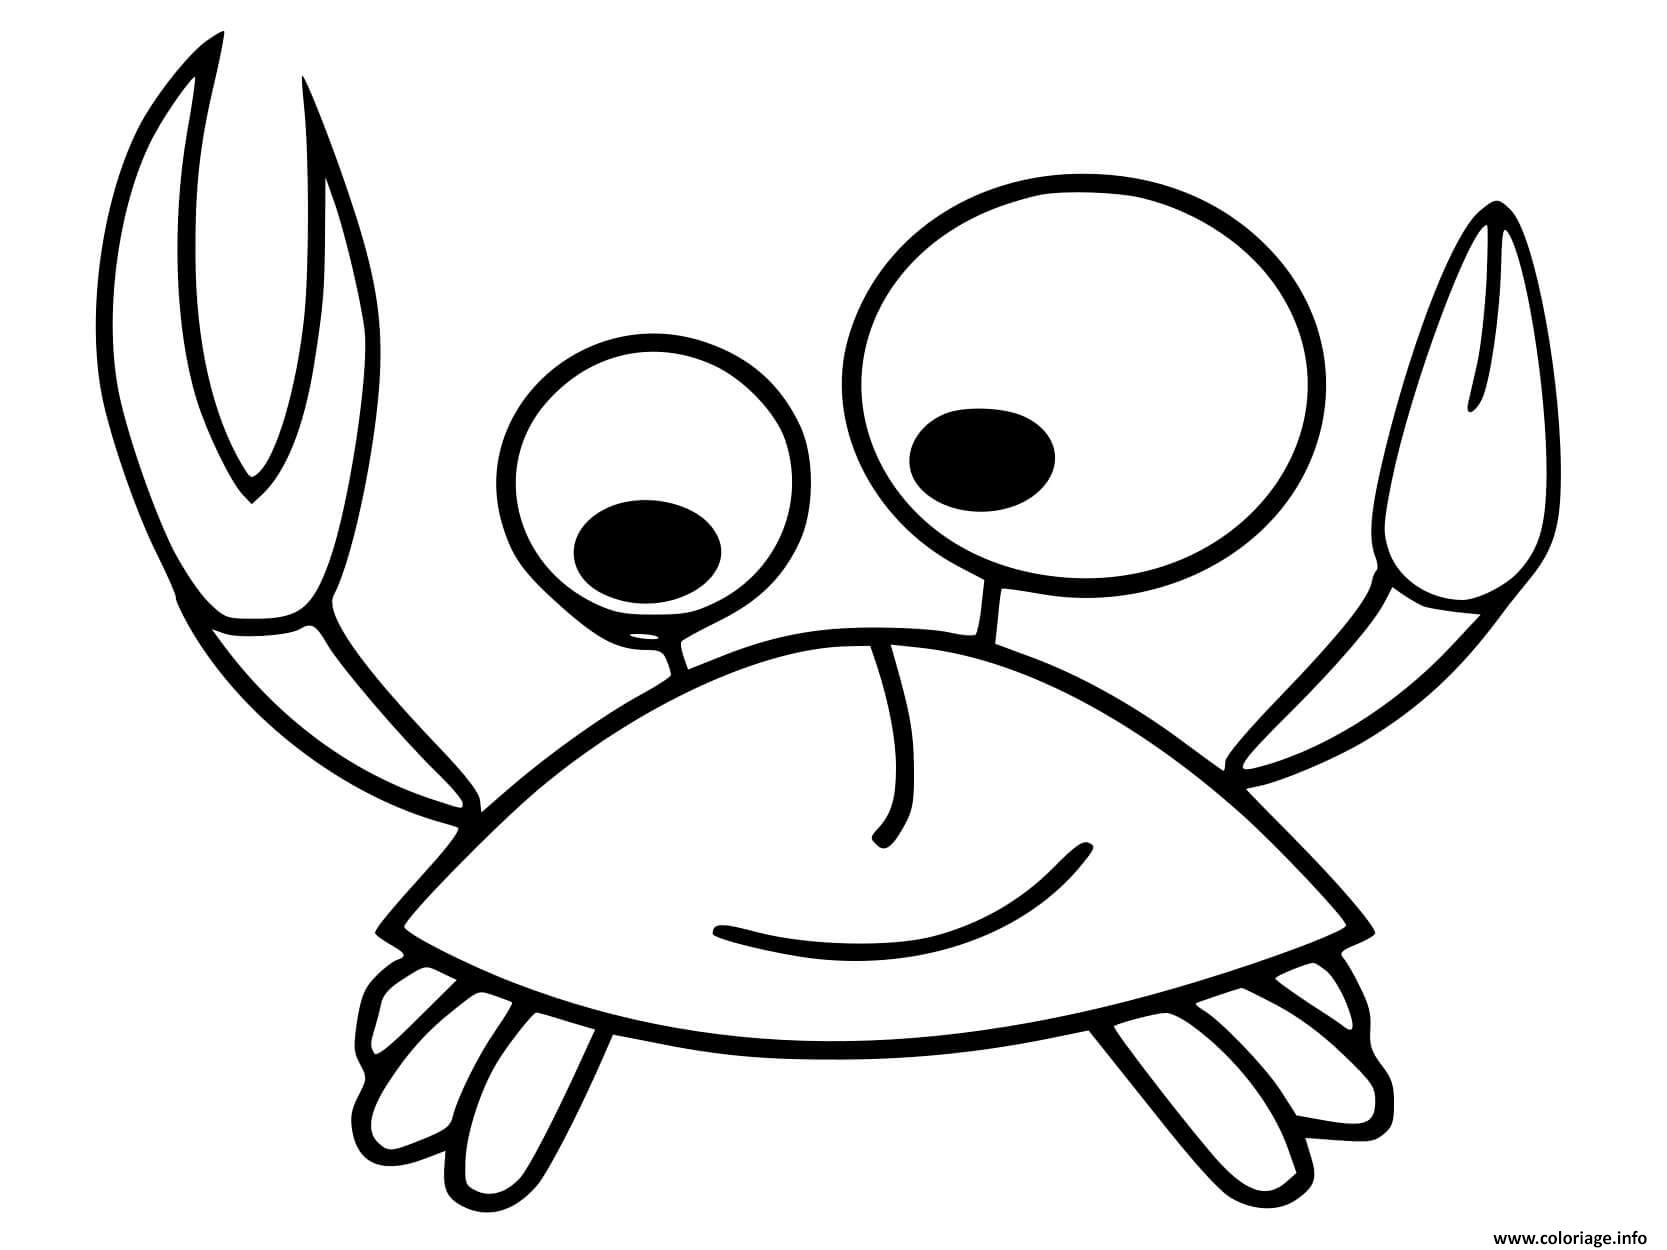 Dessin crabe facile simple Coloriage Gratuit à Imprimer